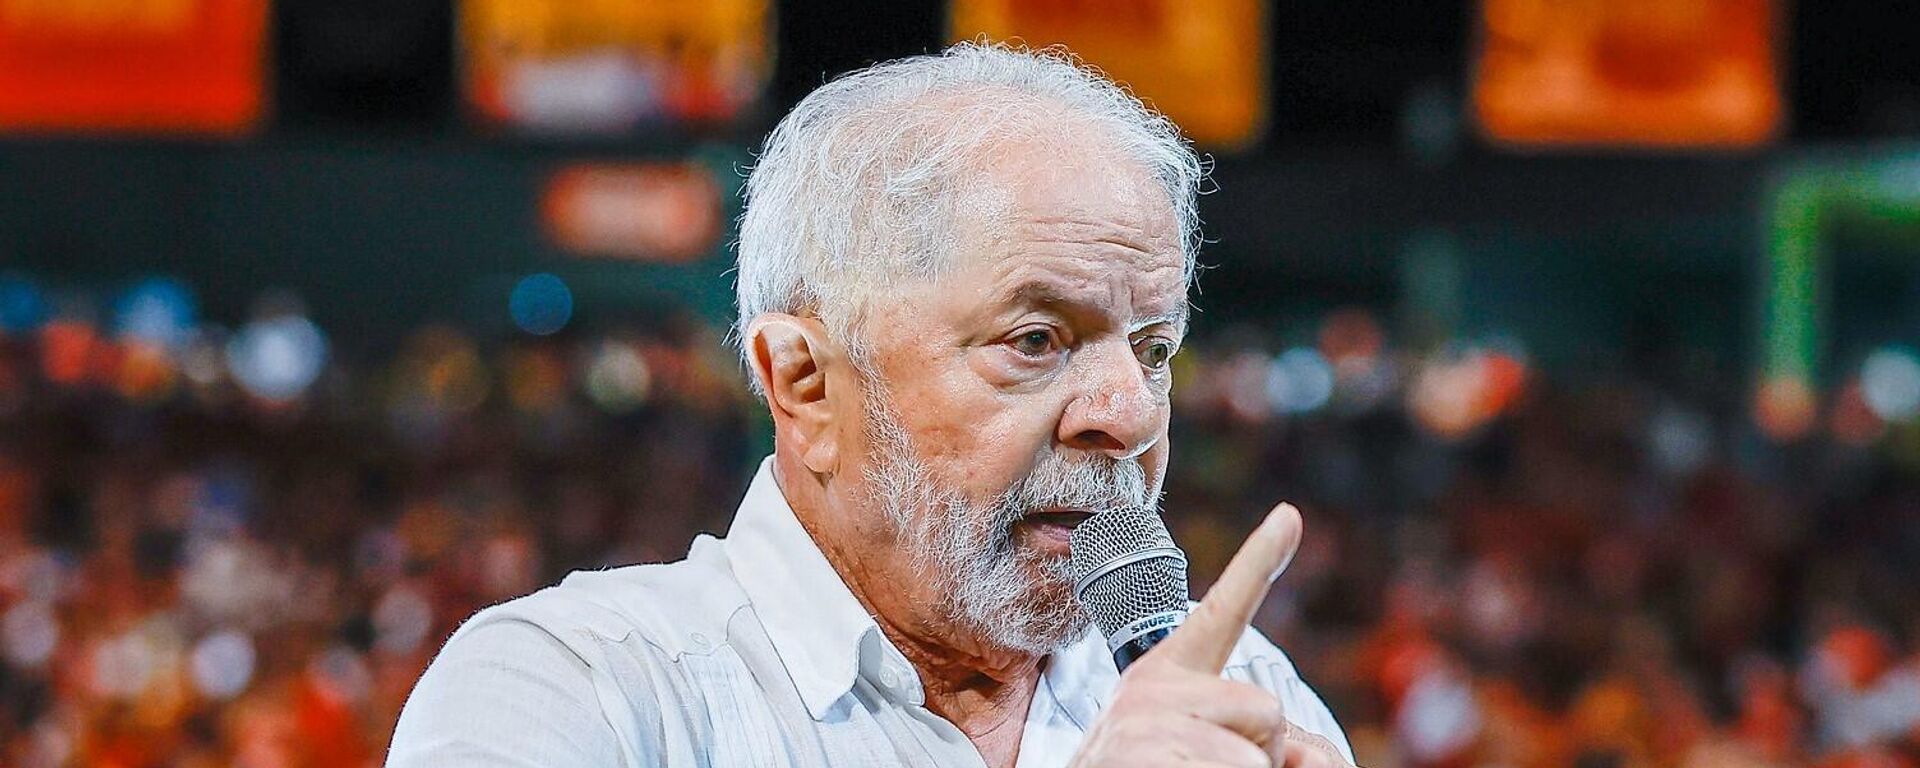 O ex-presidente Luiz Inácio Lula da Silva (PT) durante ato em Pernambuco - Sputnik Brasil, 1920, 10.09.2022